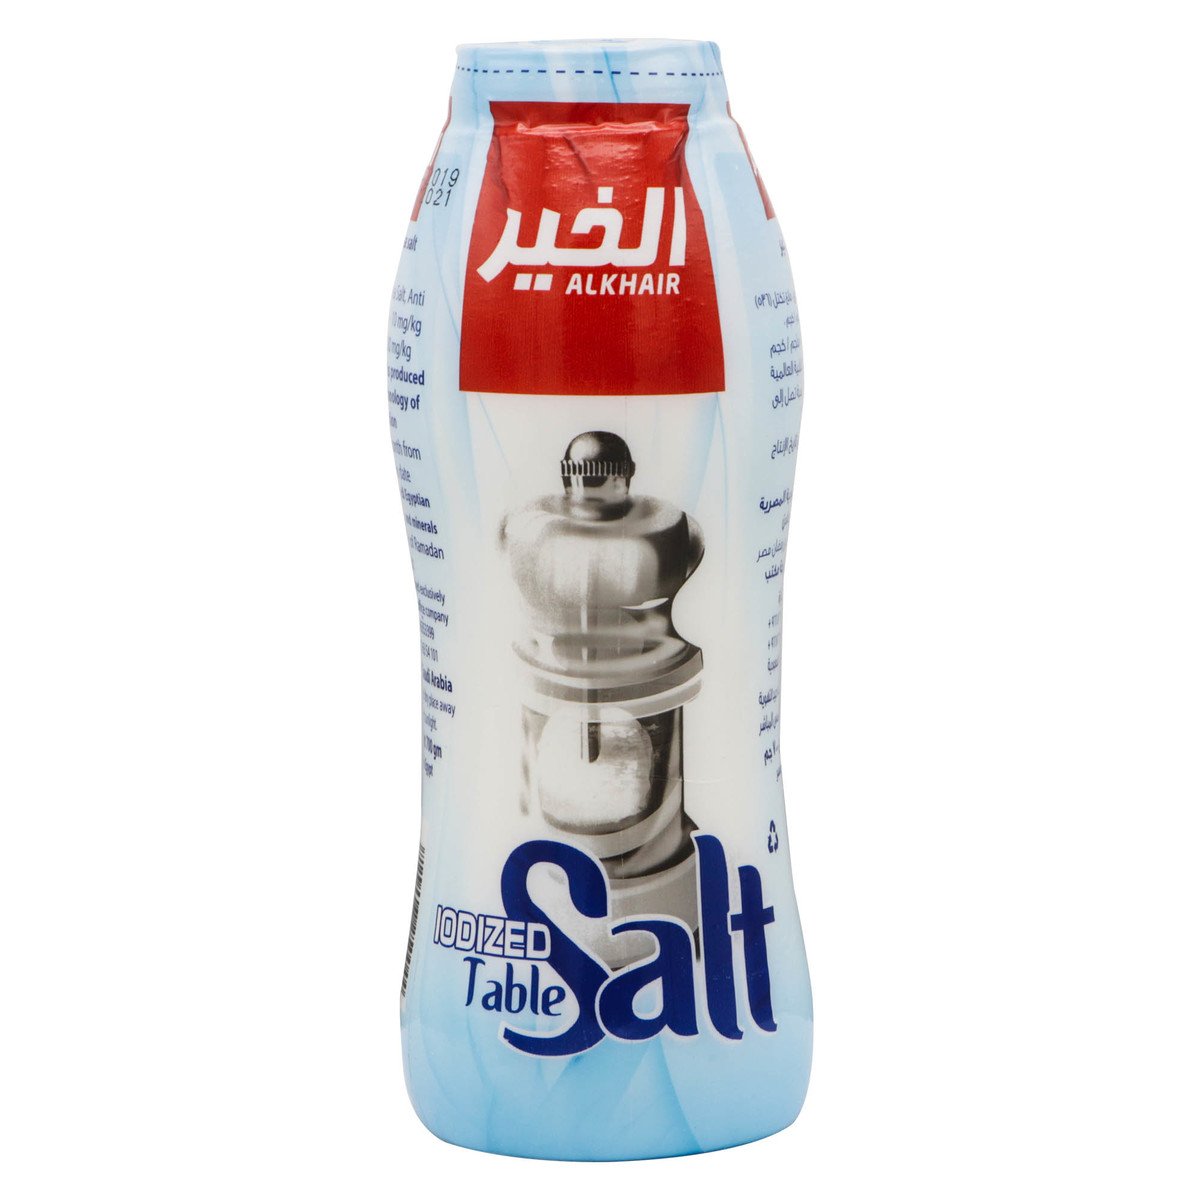 Al Khair Iodized Table Salt 700g